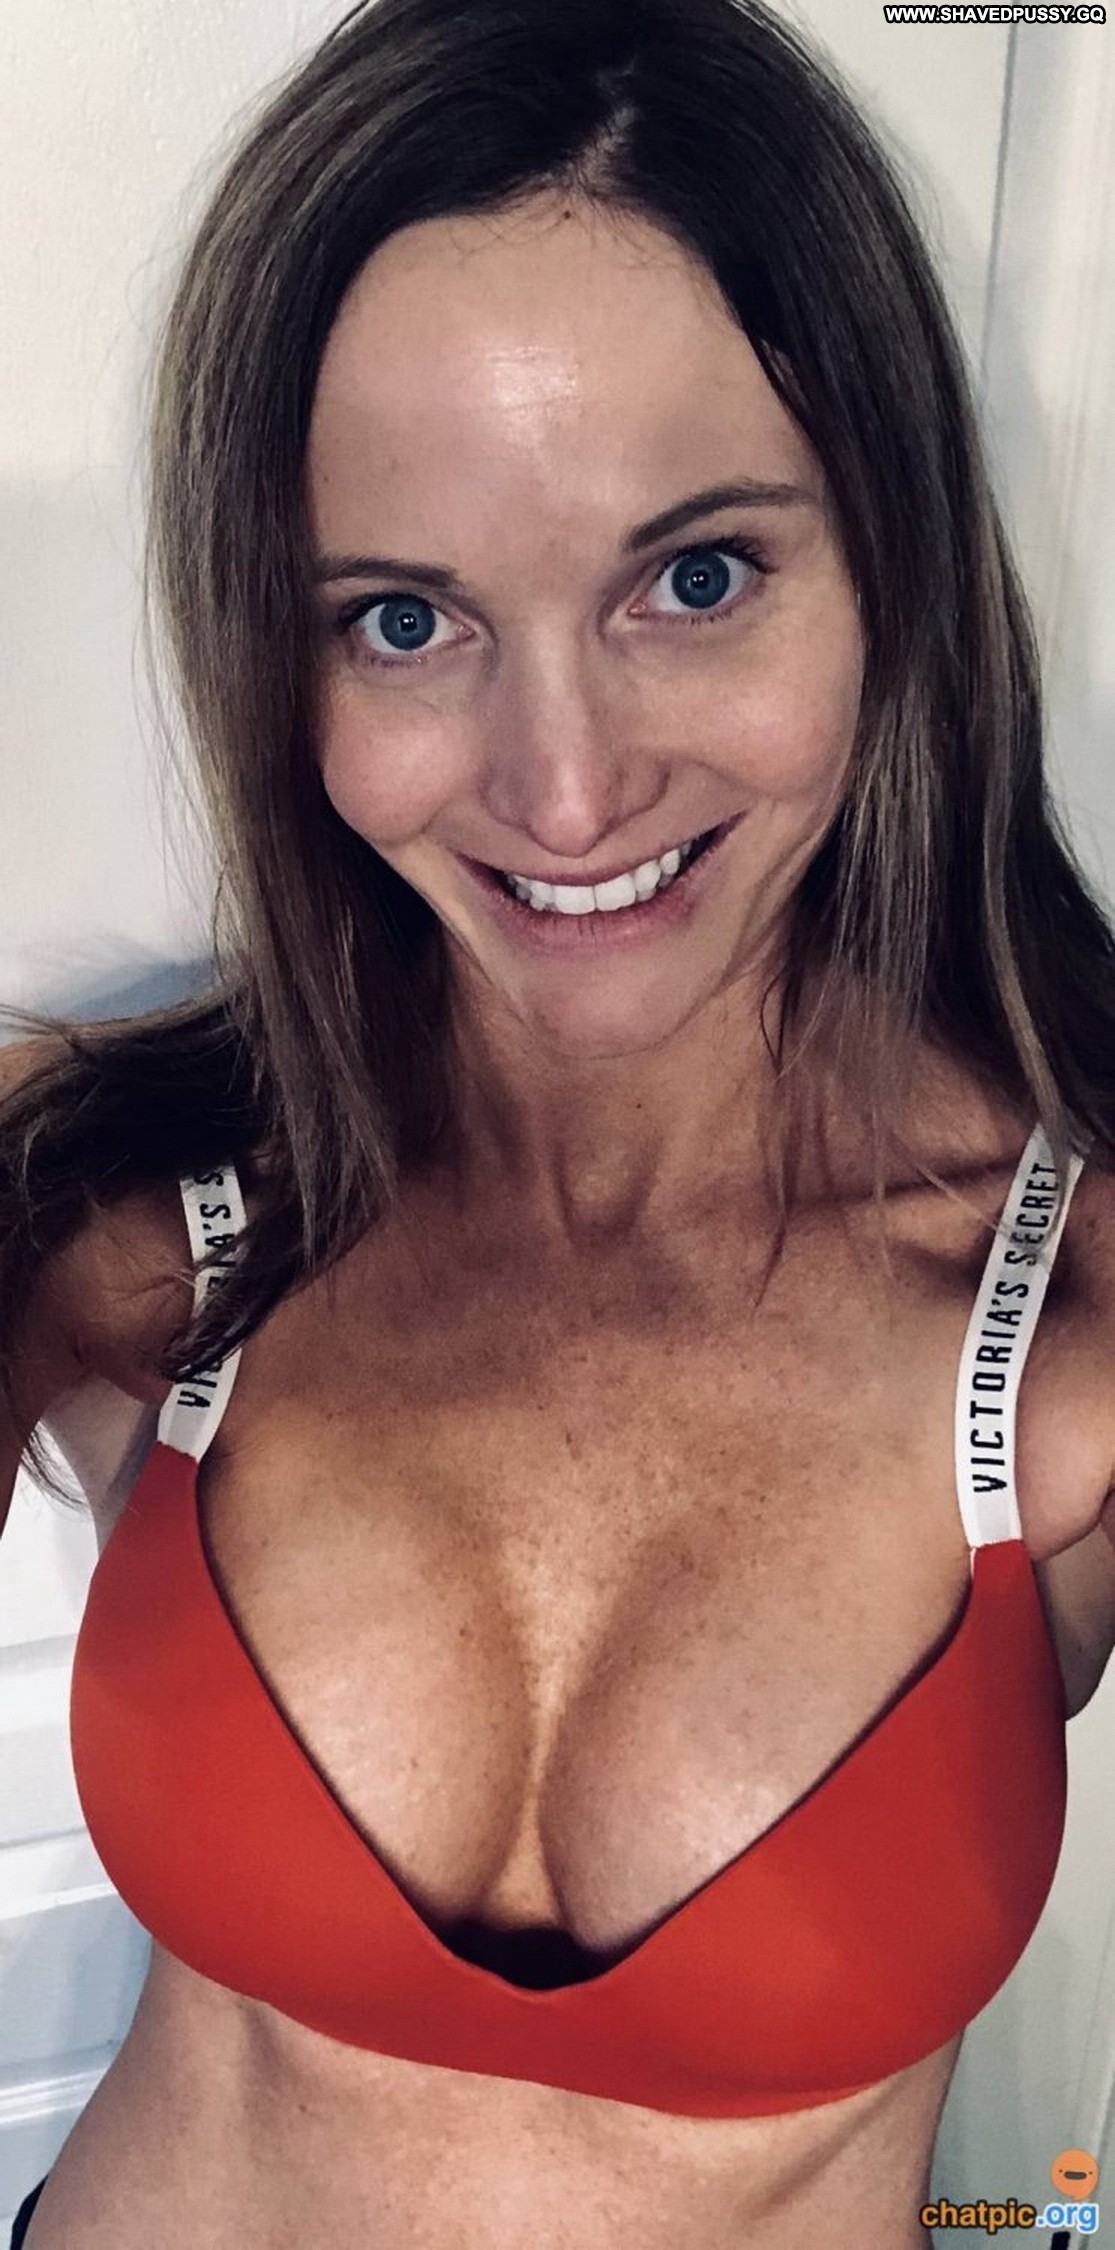 Francine Straight Slender Nude Redhead Selfies Nude Teen Peeping photo